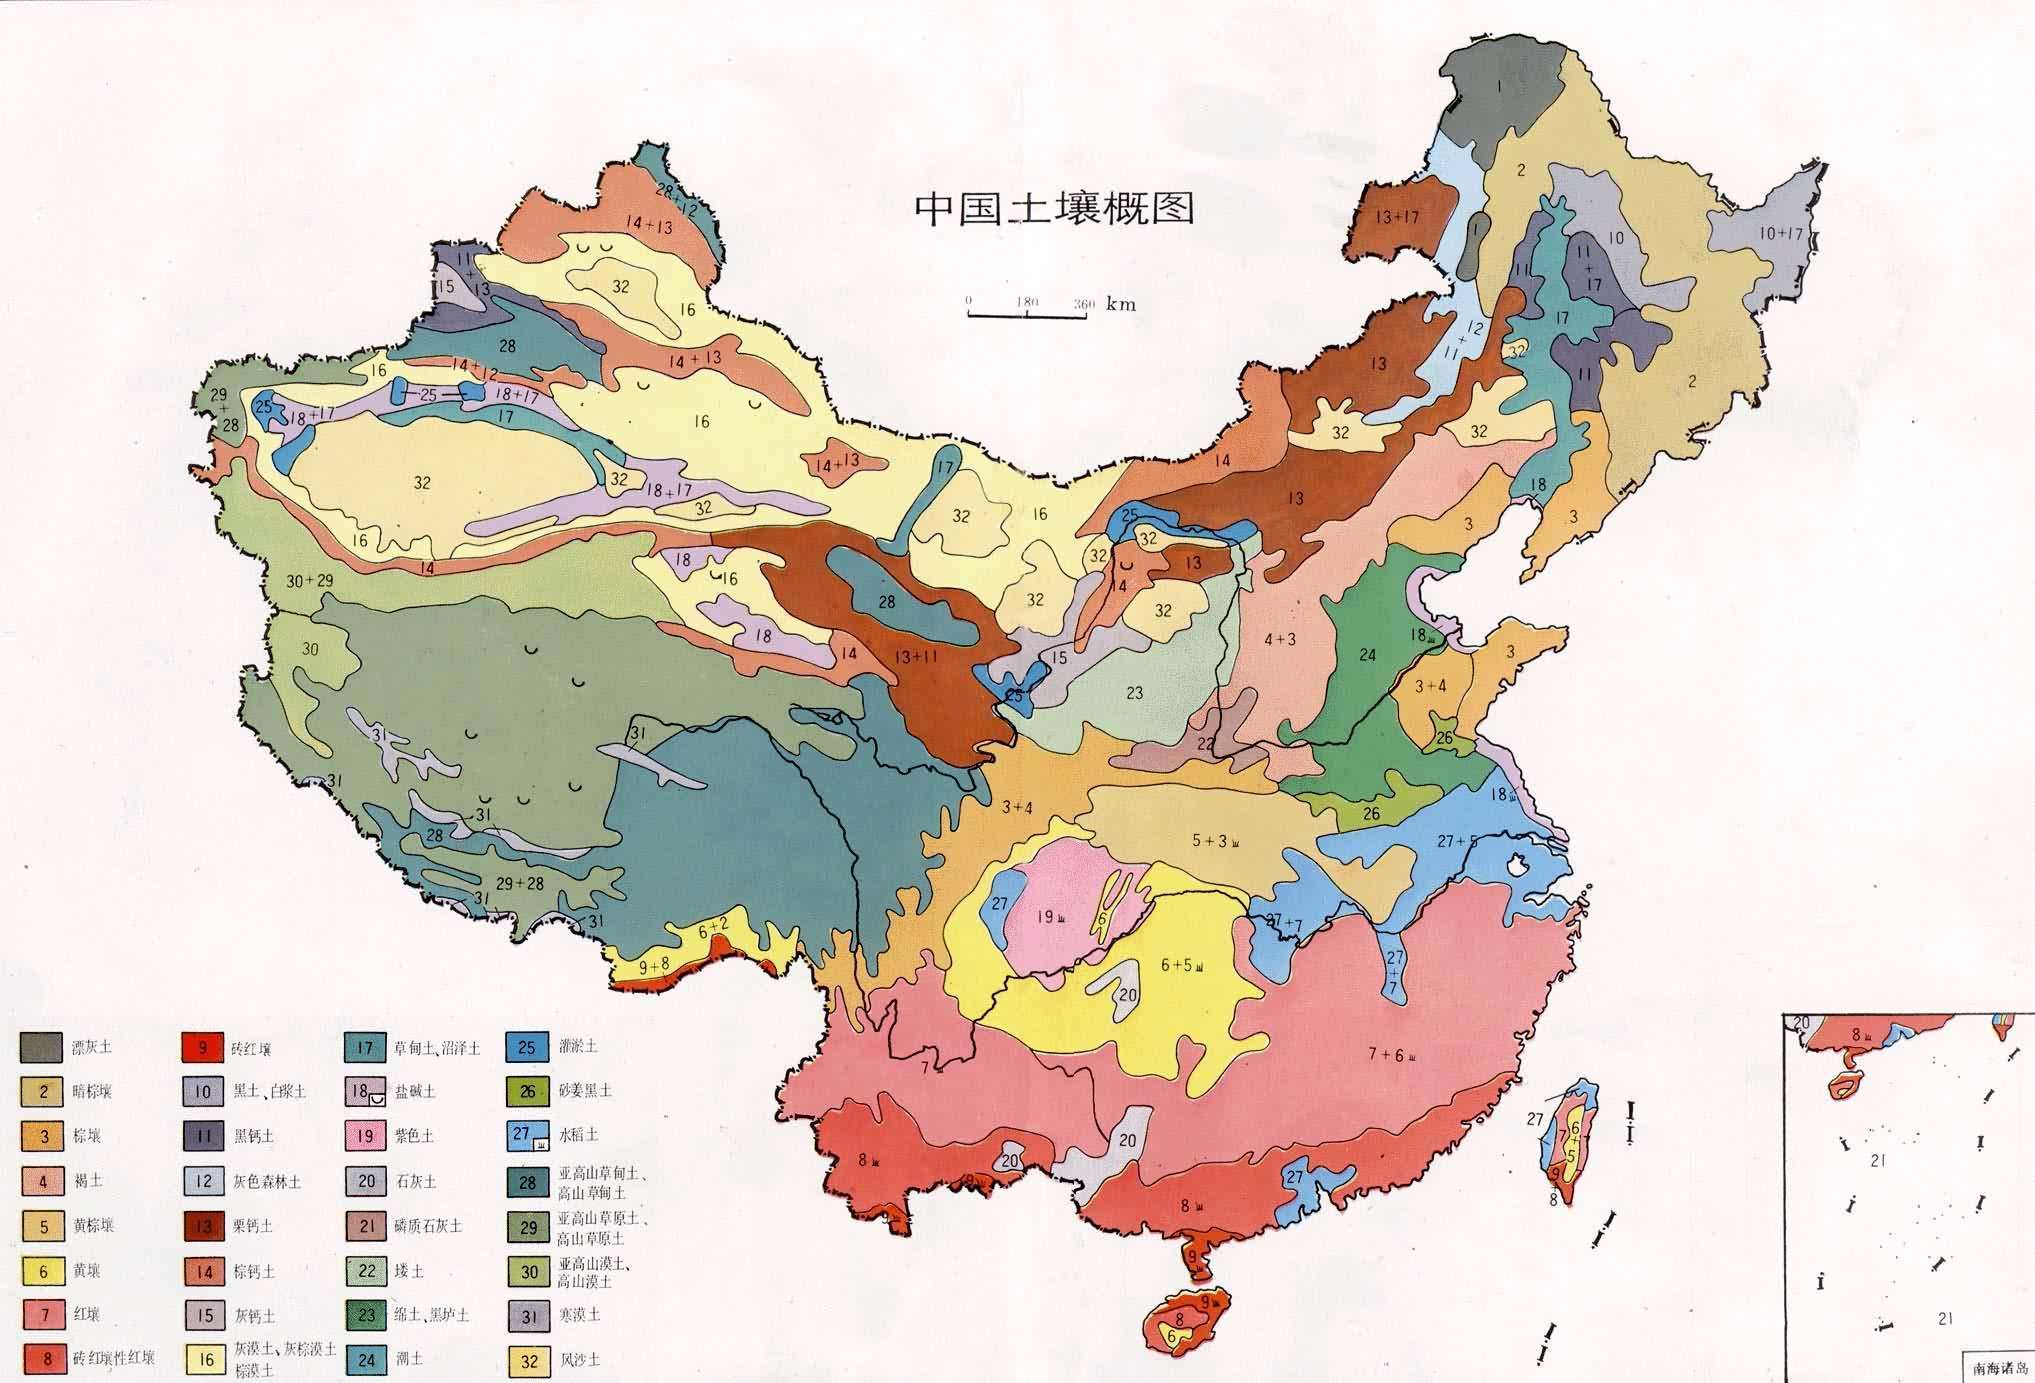 世界土壤颜色分布图图片